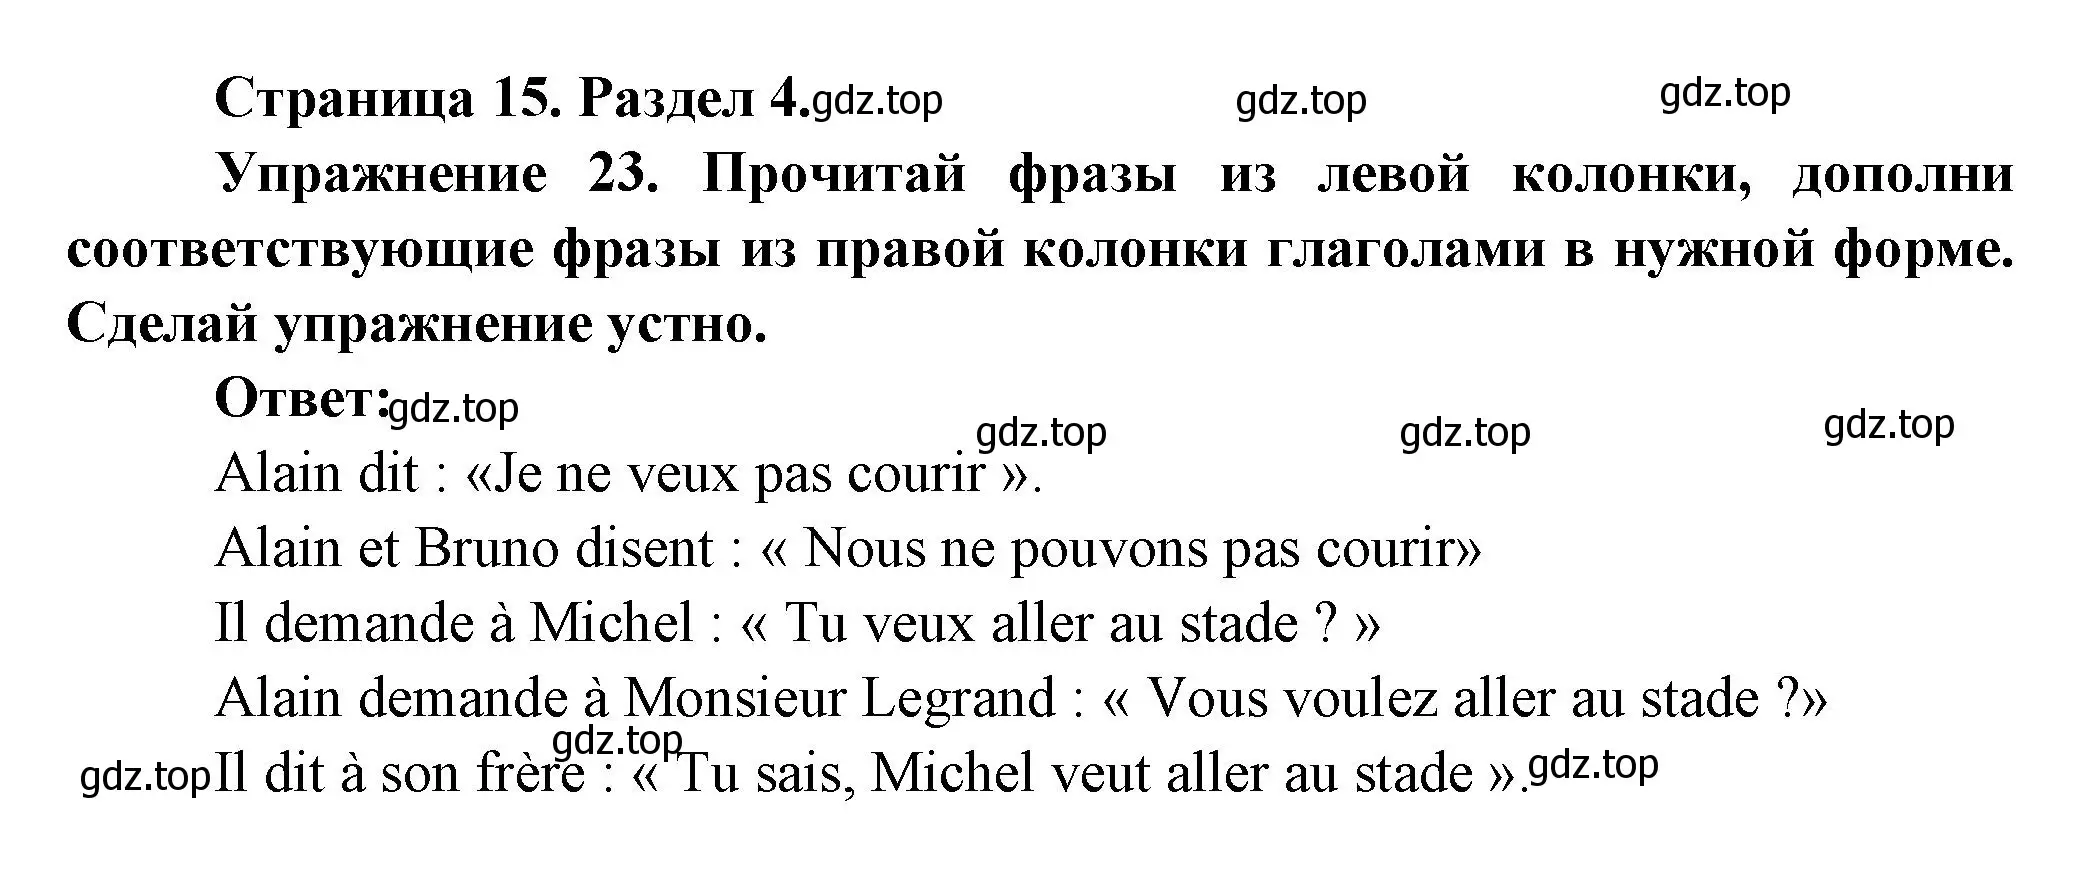 Решение номер 23 (страница 15) гдз по французскому языку 5 класс Береговская, Белосельская, учебник 2 часть